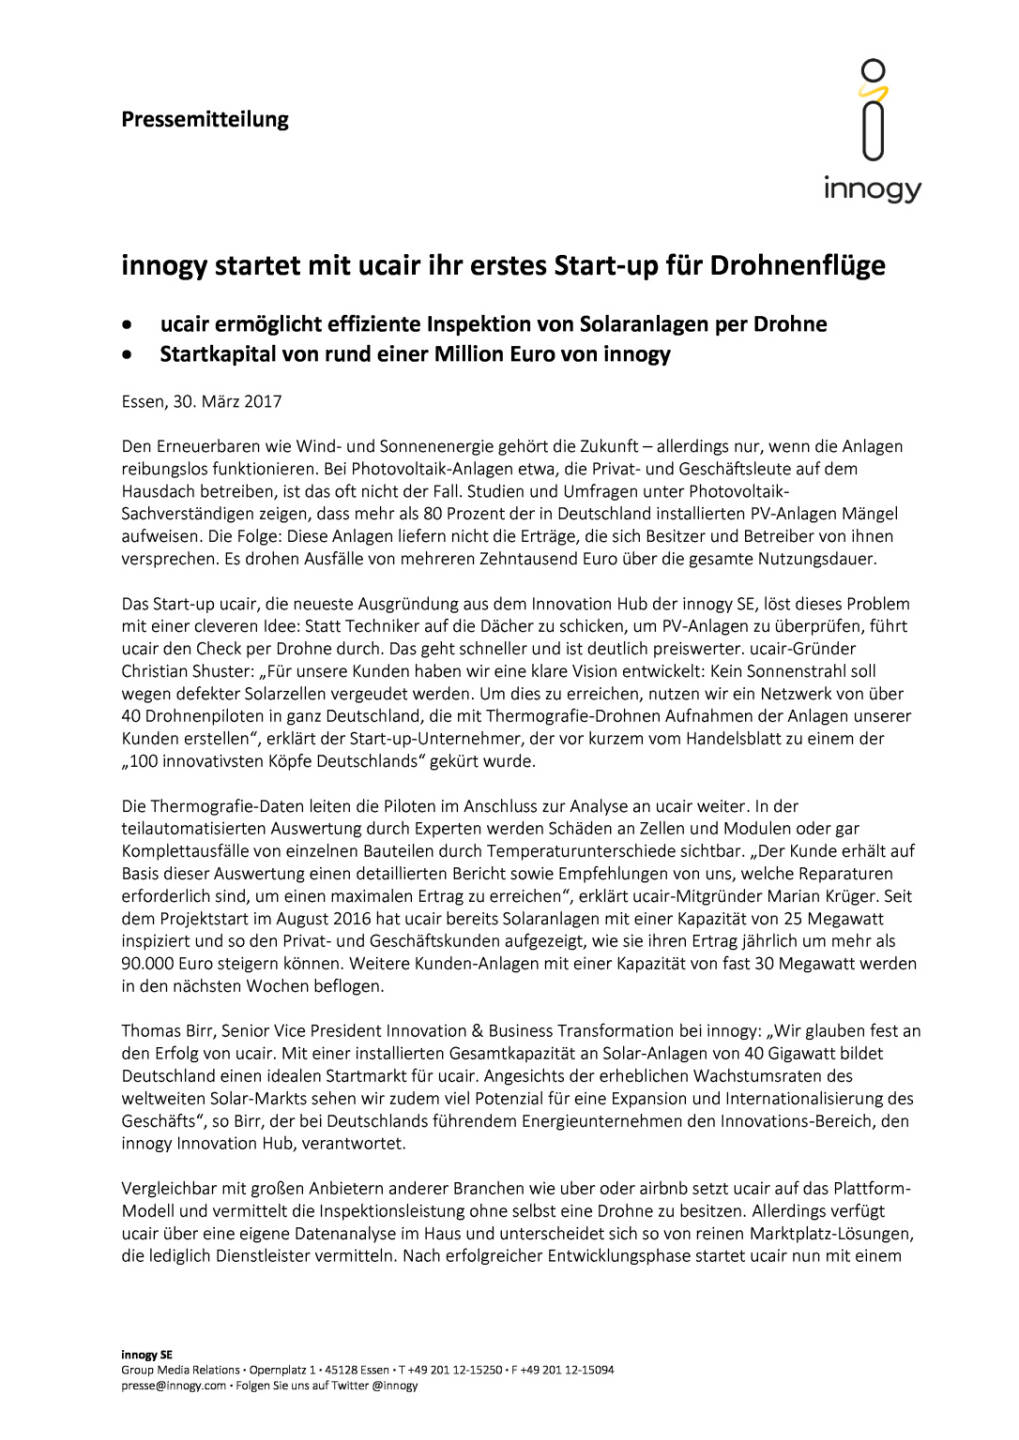 innogy startet mit ucair ihr erstes Start-up für Drohnenflüge, Seite 1/2, komplettes Dokument unter http://boerse-social.com/static/uploads/file_2189_innogy_startet_mit_ucair_ihr_erstes_start-up_fur_drohnenfluge.pdf